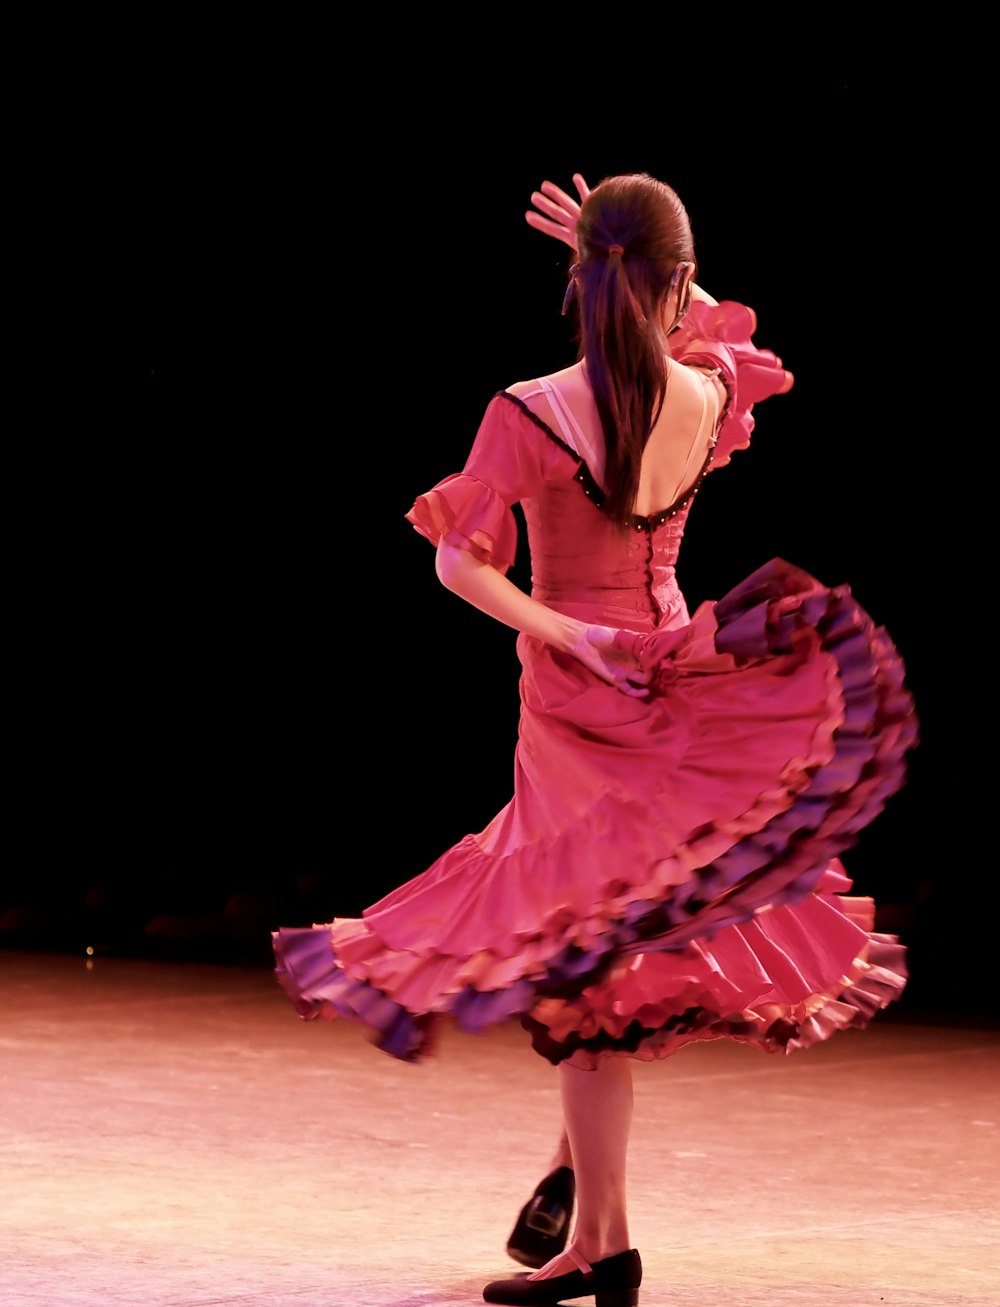 무대에 서 있는 분홍색 드레스를 입은 여자